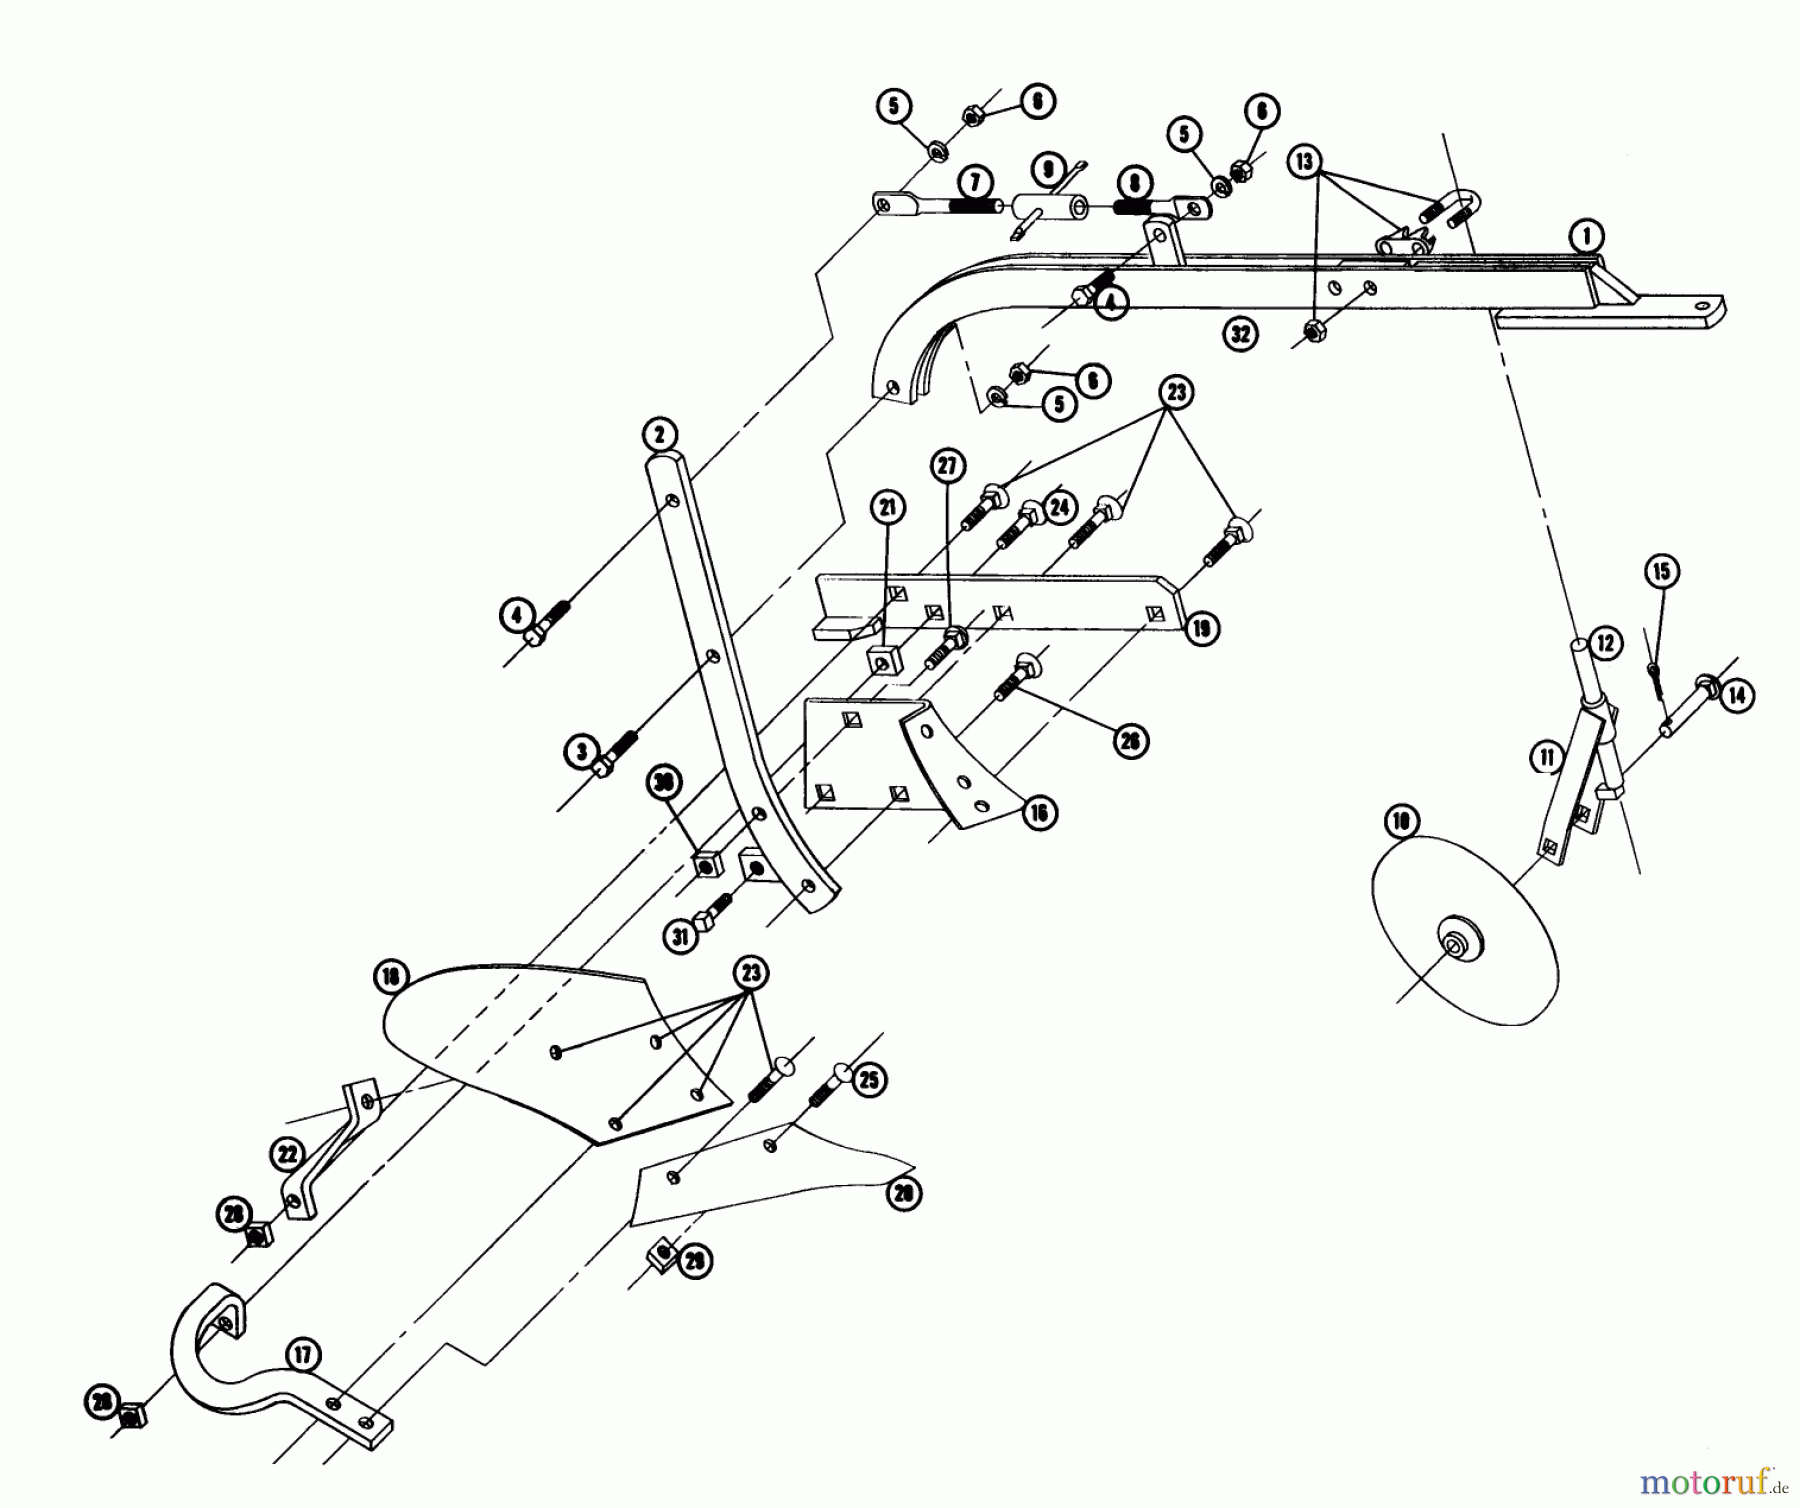  Toro Neu Utility Carts LTD-242 - Toro 5.5 Cubic Foot Cart, 1962 PLOW & COULTER PP-10HD PARTS LIST